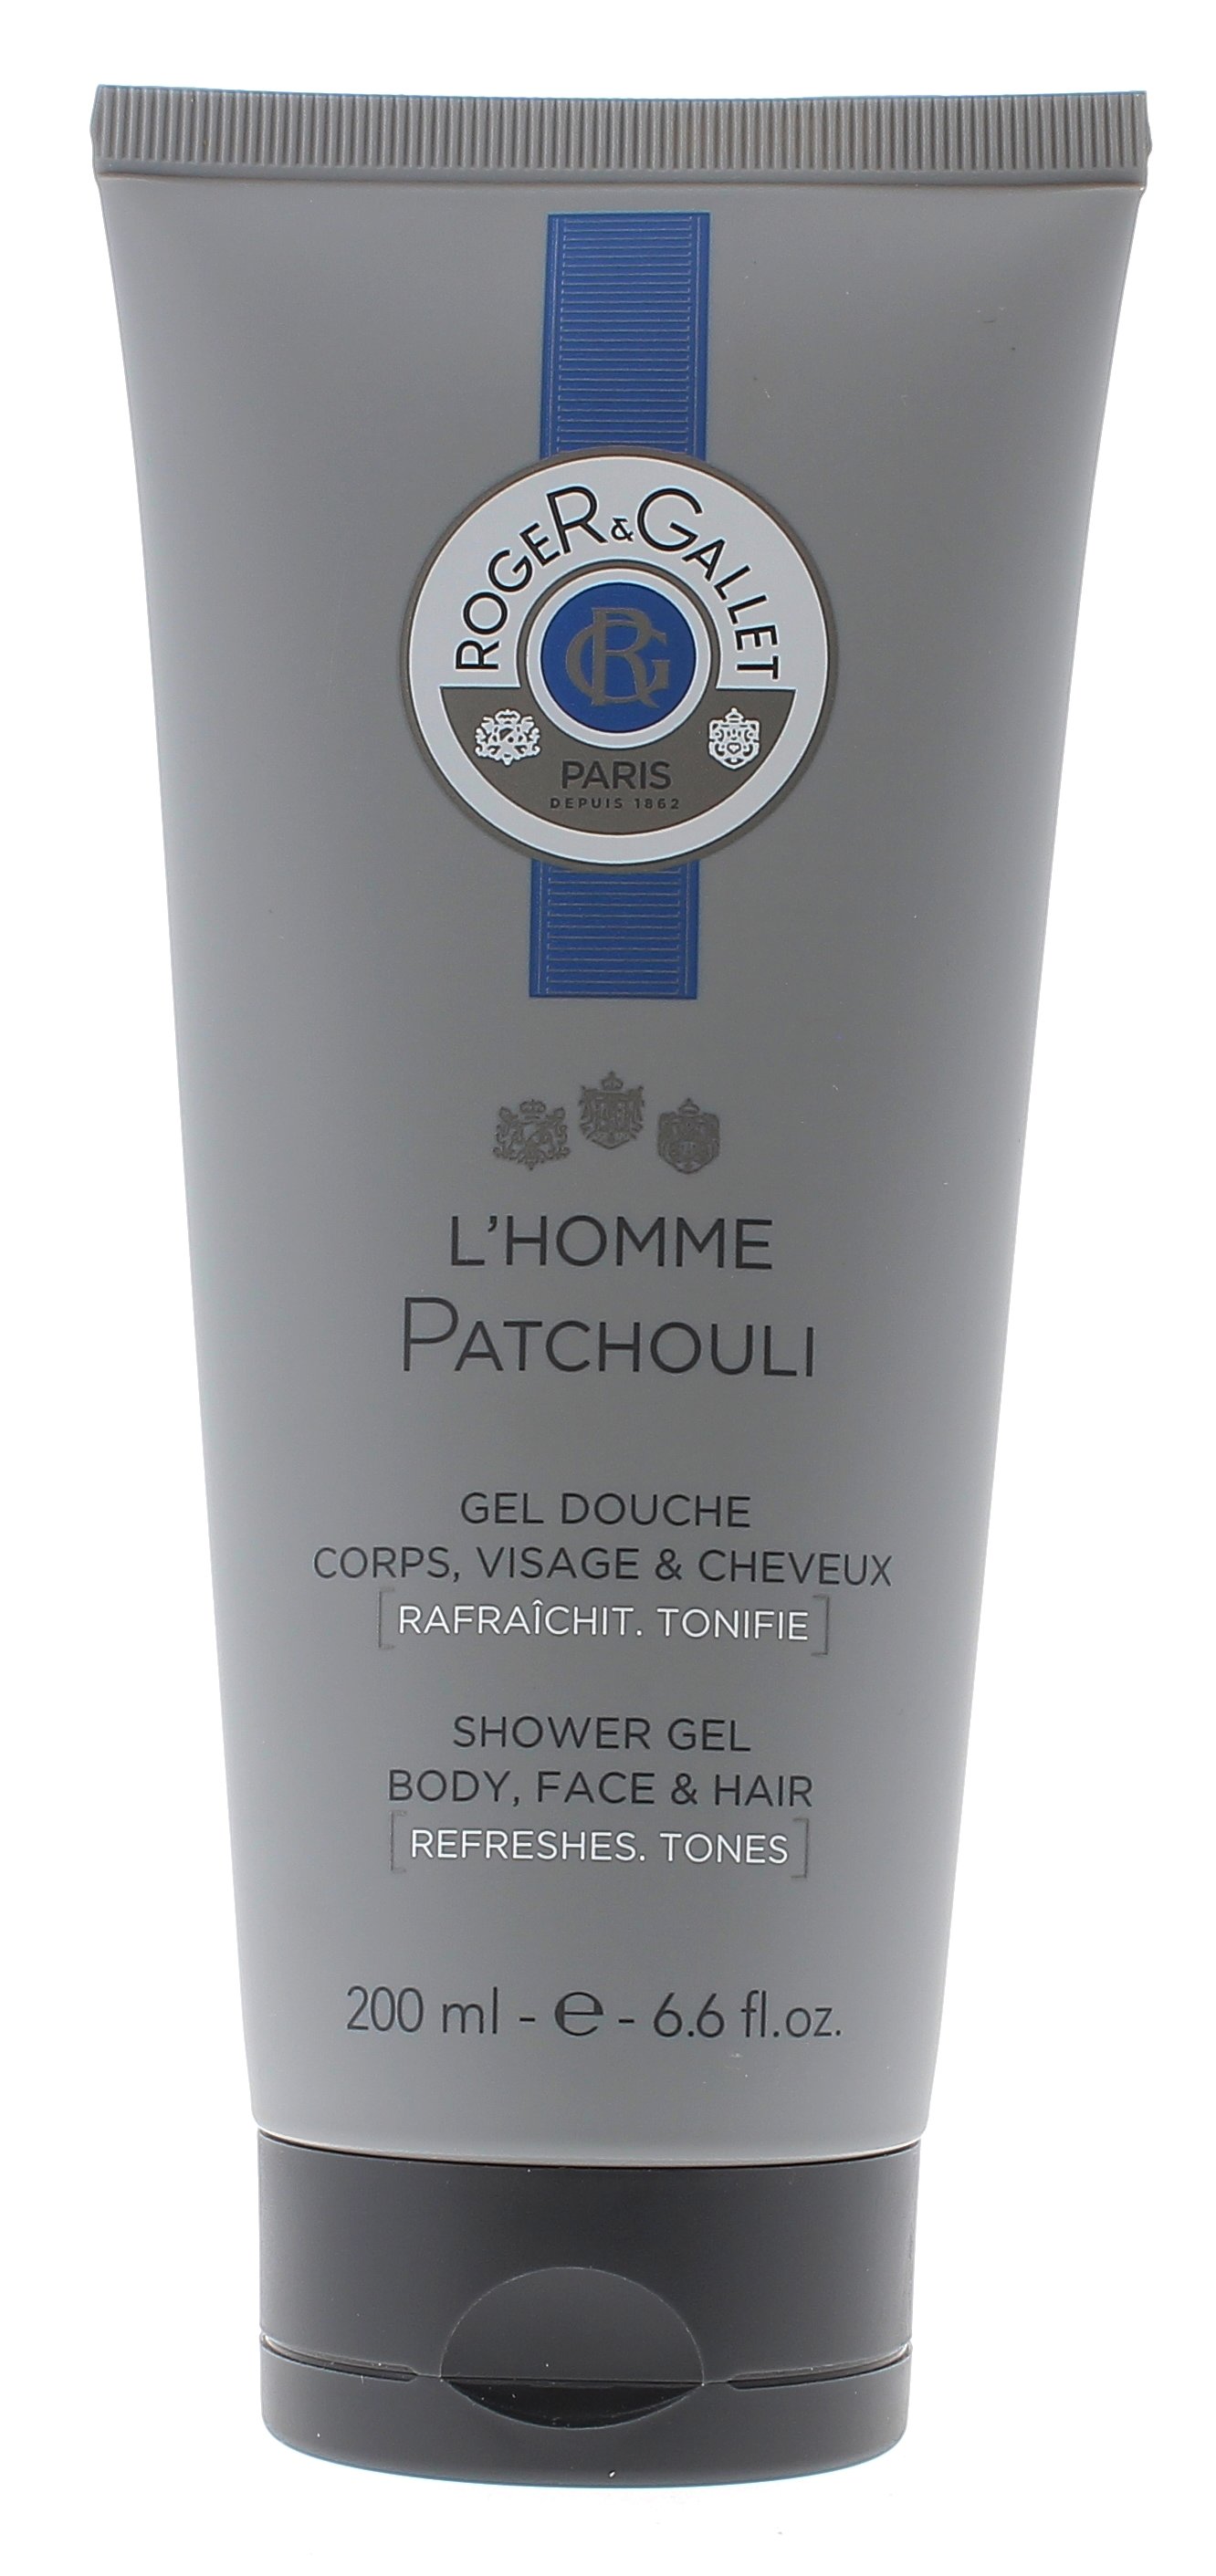 L'homme Patchouli gel douche corps, visage, cheveux Roger & Gallet - Tube de 200 ml